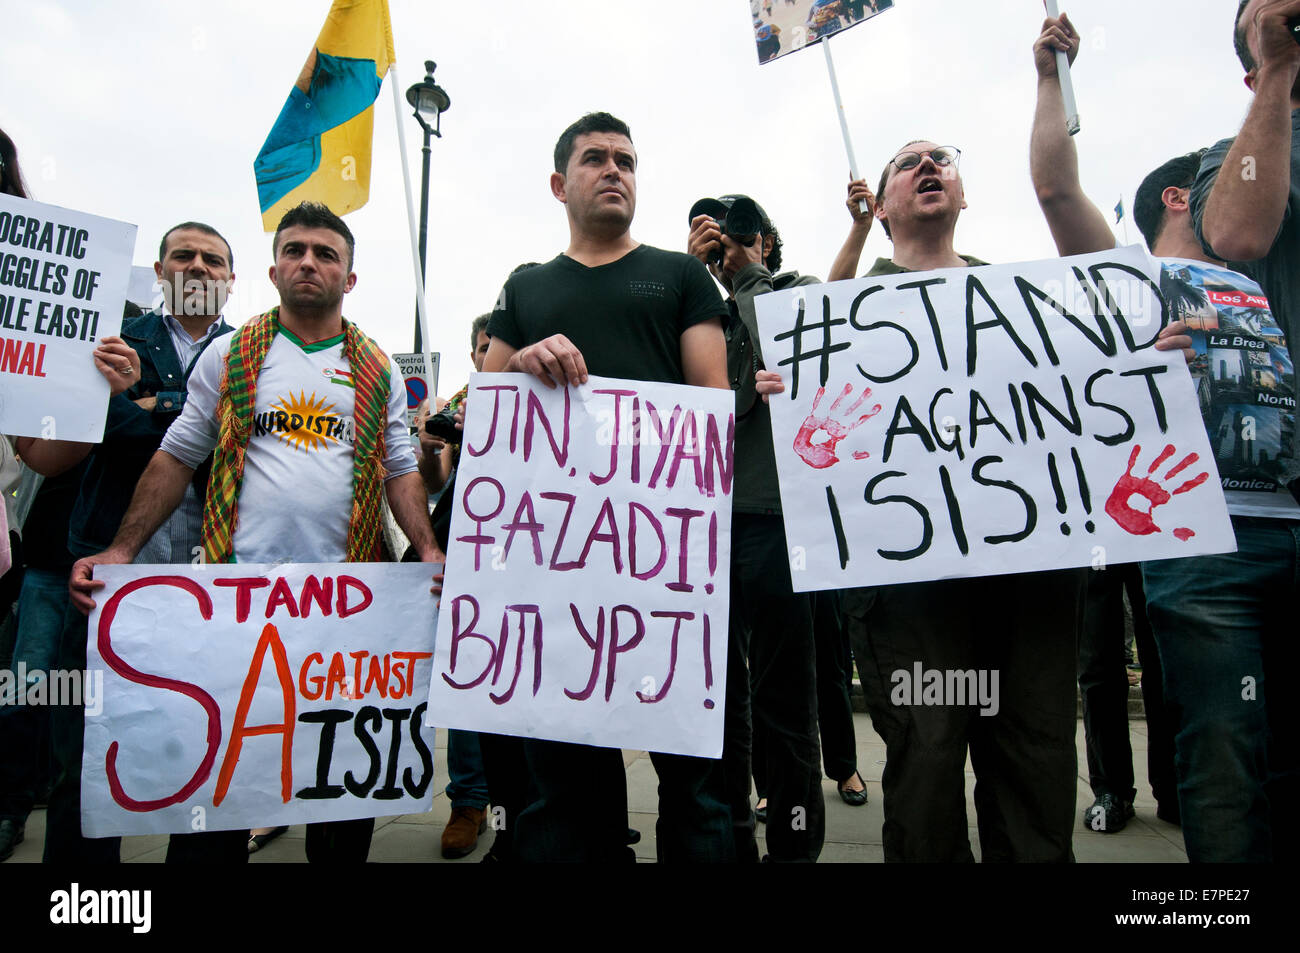 Manifestation à la place du Parlement Londres contre ISIS / État islamique massacres kurdes en Iraq et en Syrie 20 Sept 2014 Banque D'Images